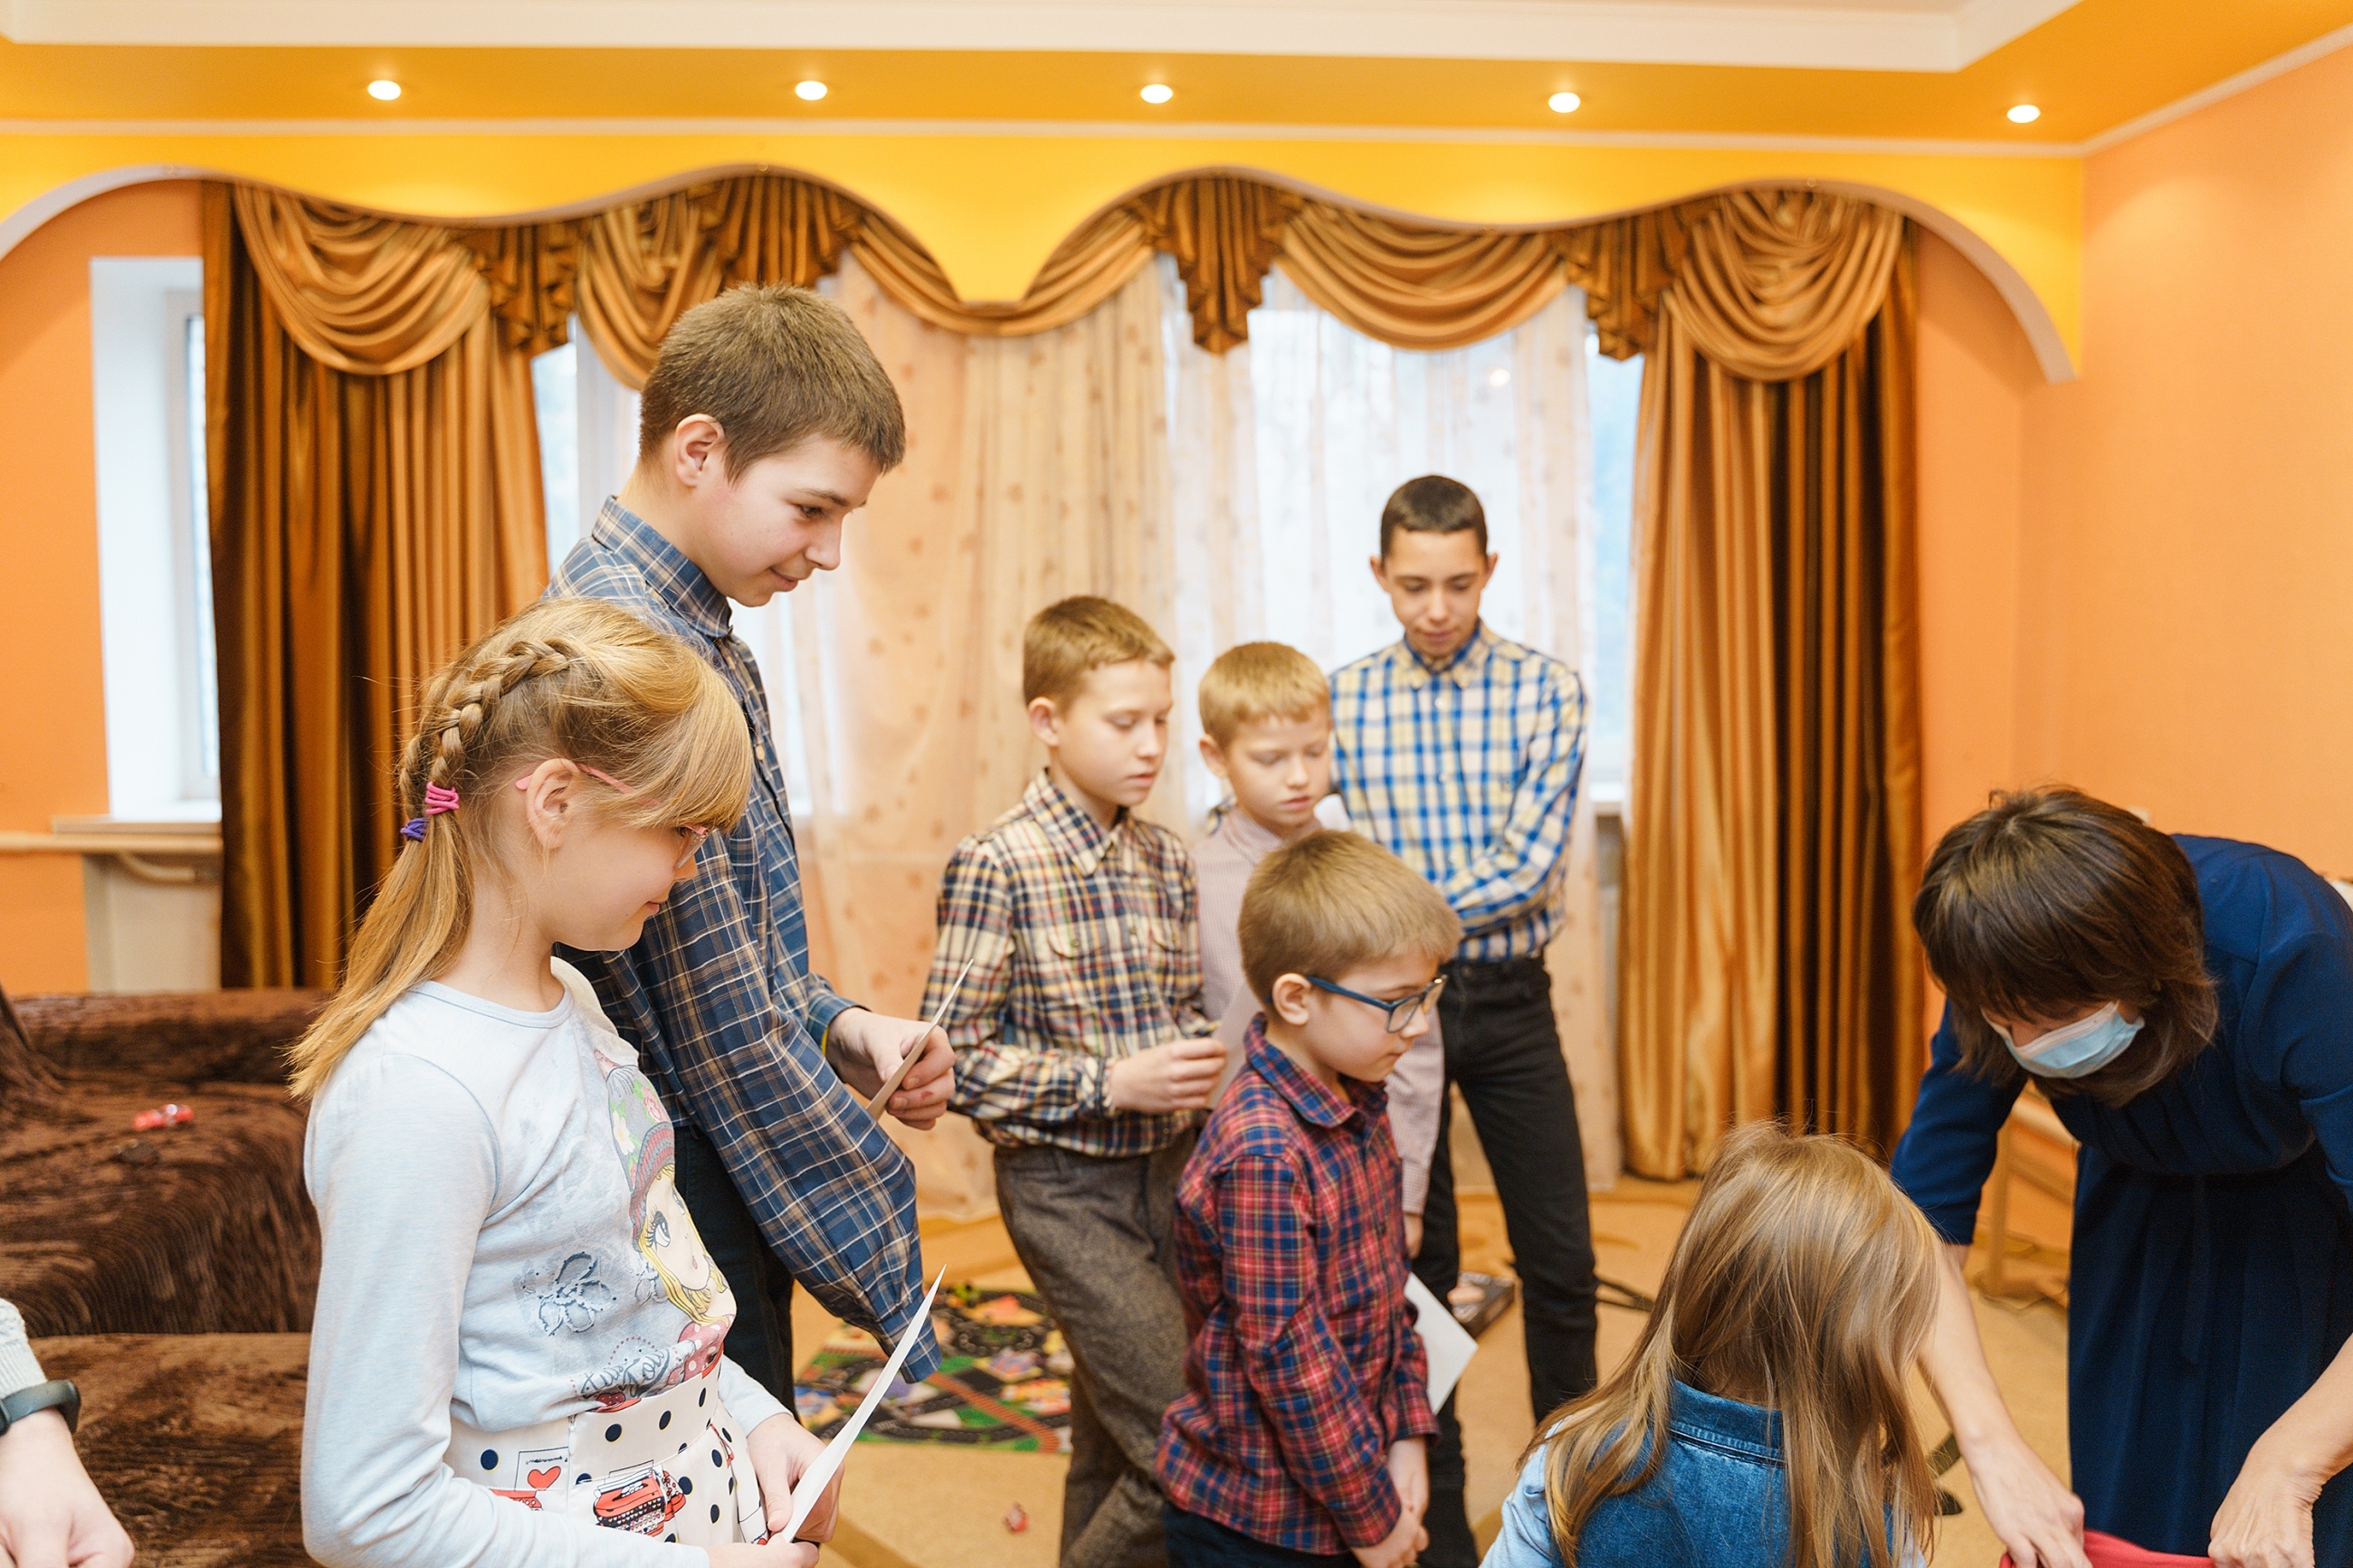 Вихованців дитячого будинку сімейного типу у Вінниці привітали зі святами